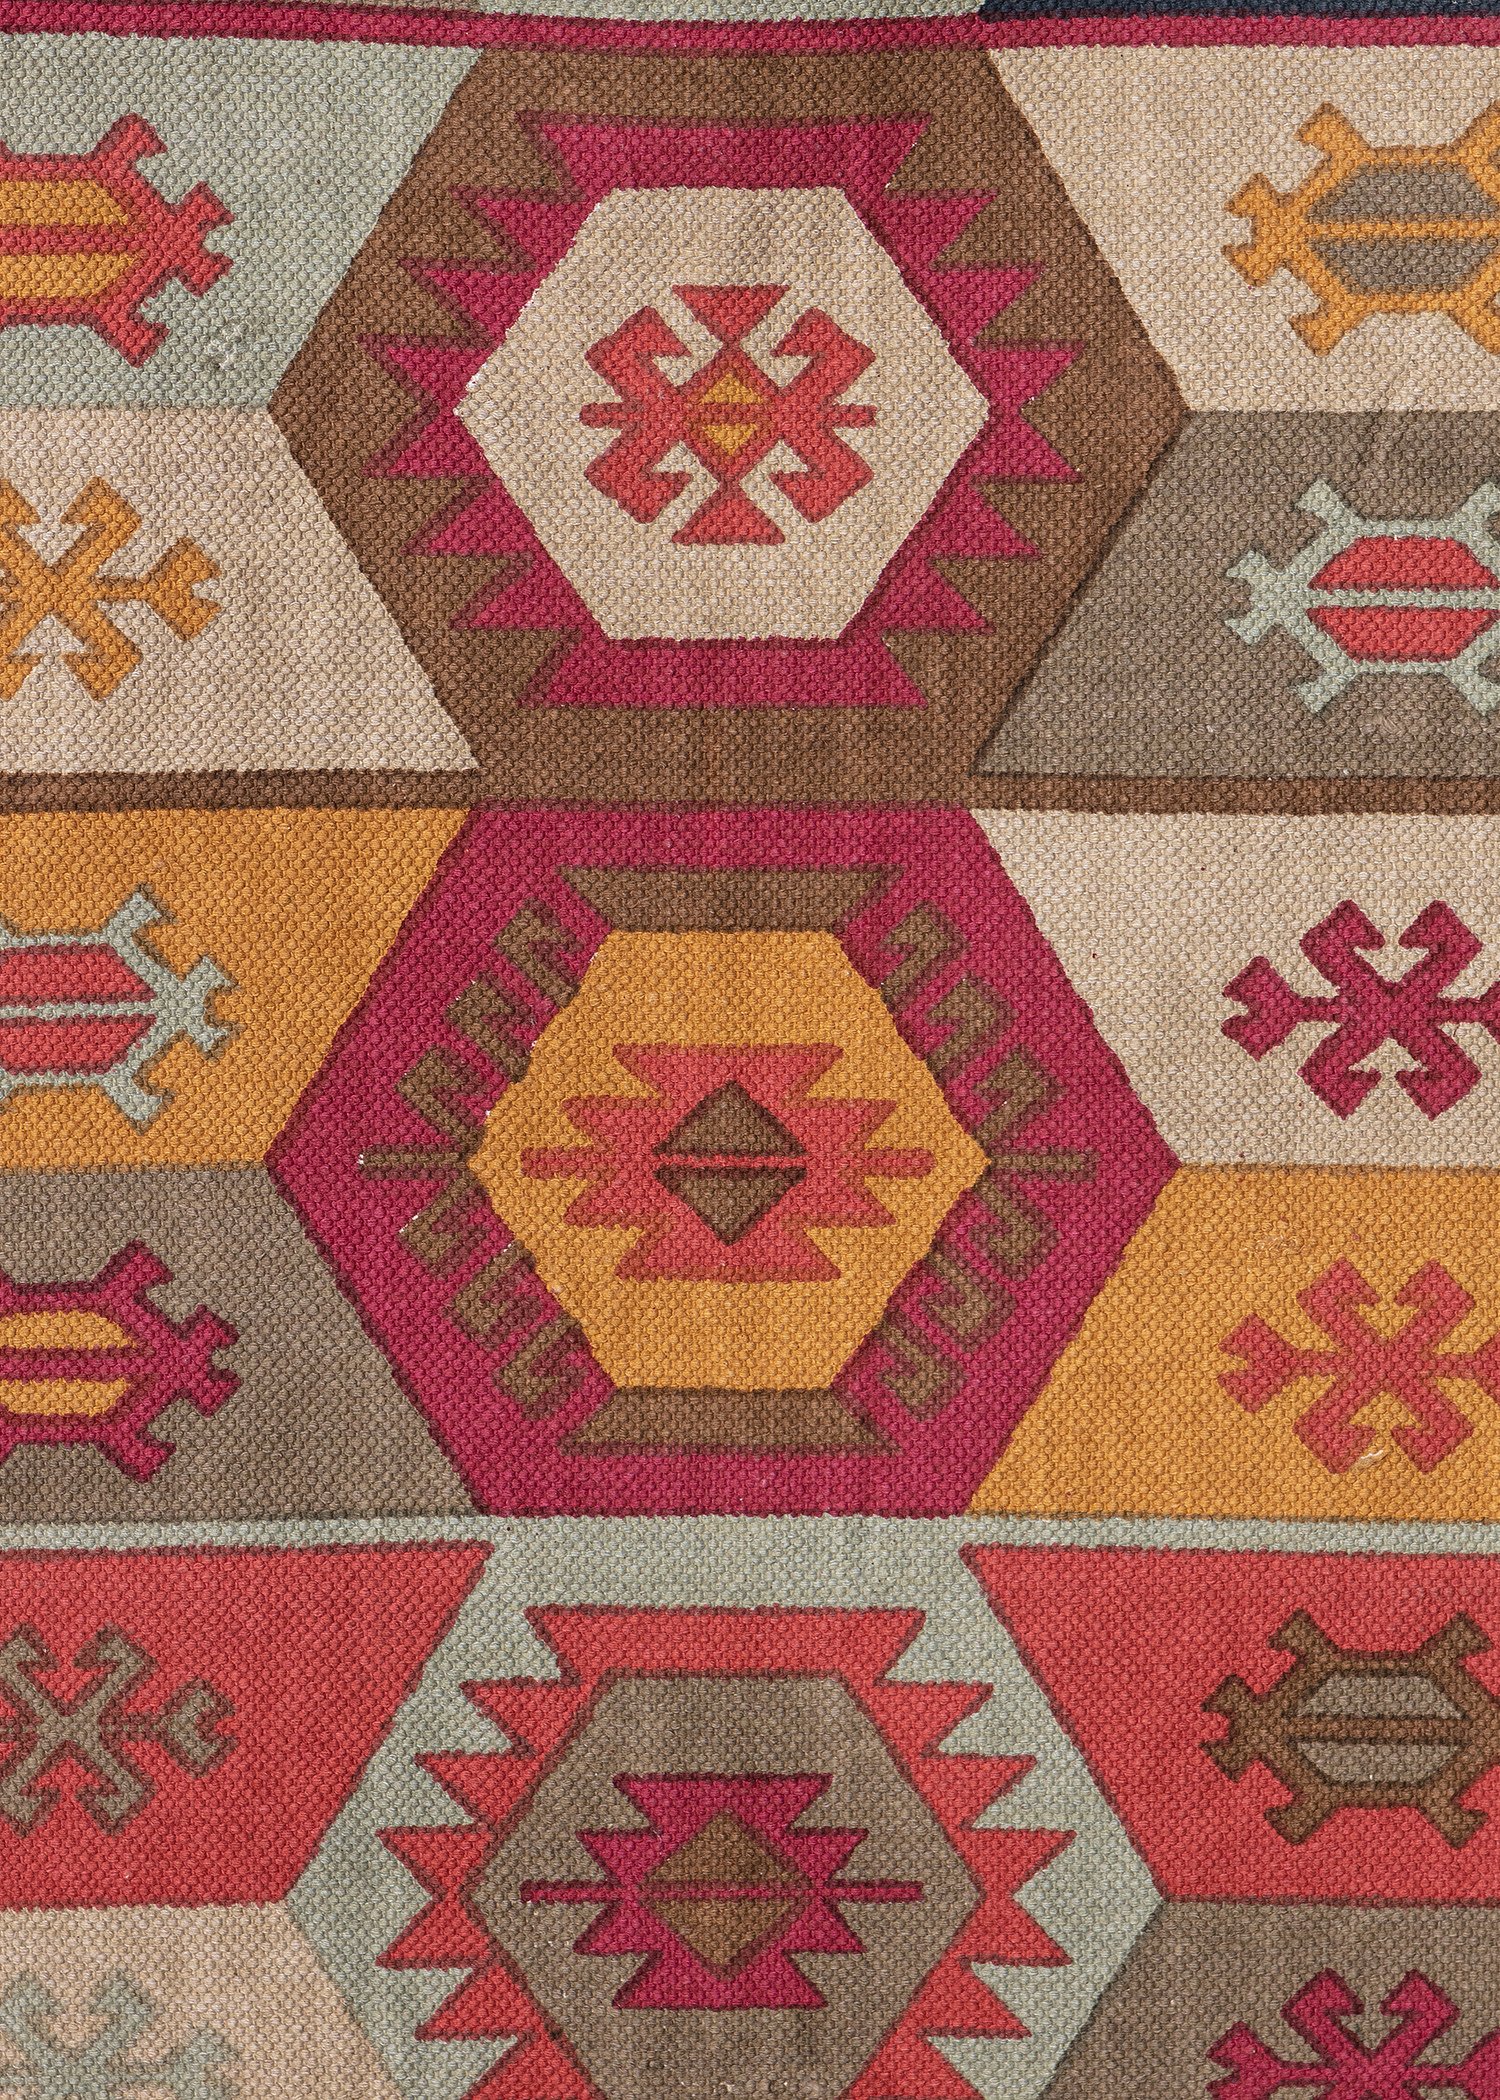 Multicolour cotton rug 70x200 cm Image 1